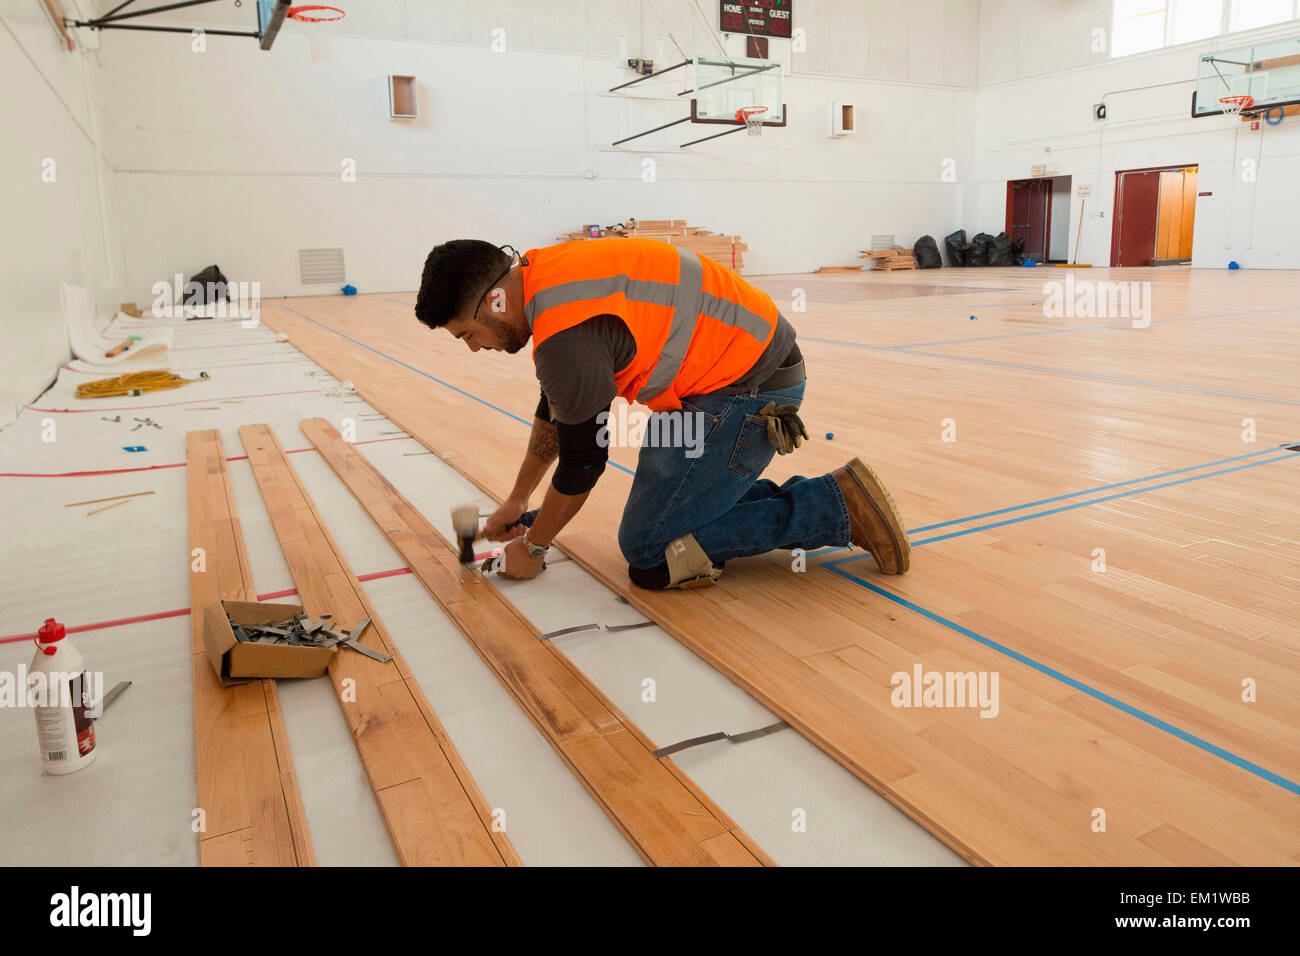 Un lavoratore stabilisce maple pavimenti in legno in un campo di pallacanestro. Foto Stock